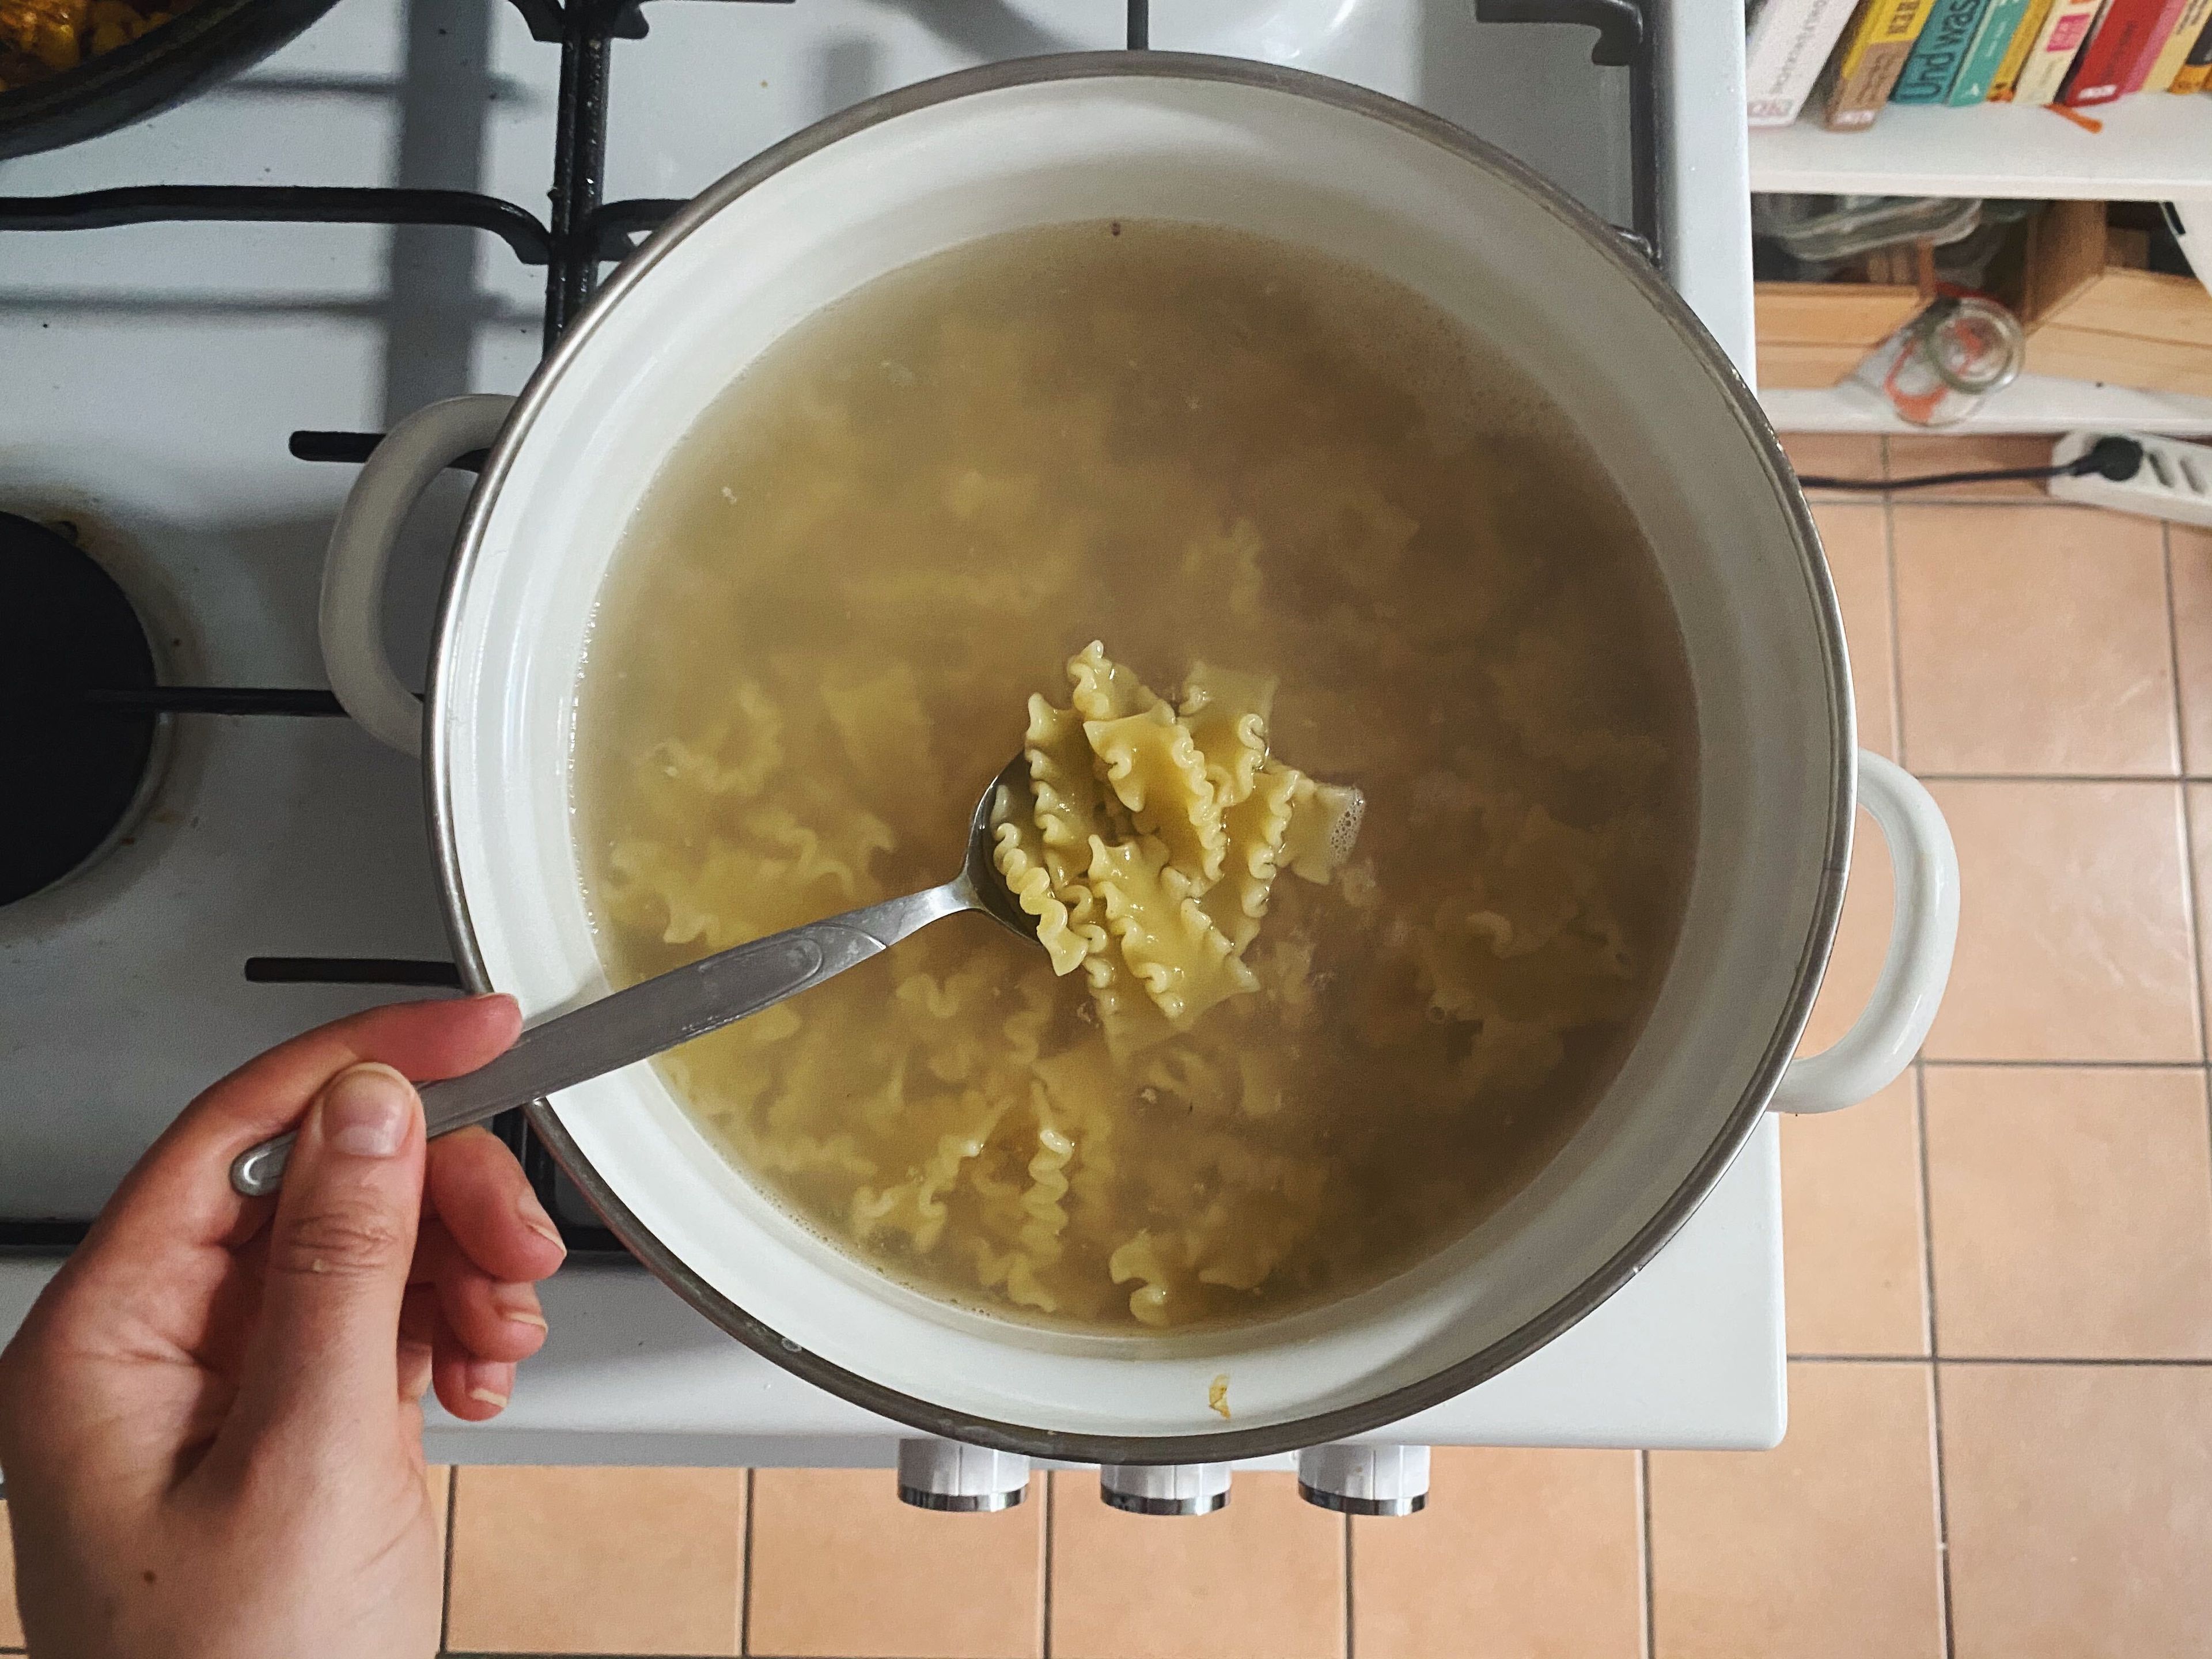 Gesalzenes Wasser in einem großen Topf zum Kochen bringen. Pasta nach Packungsanleitung kochen. Vor dem Abgießen etwas vom Kochwasser abschöpfen und beiseitestellen.